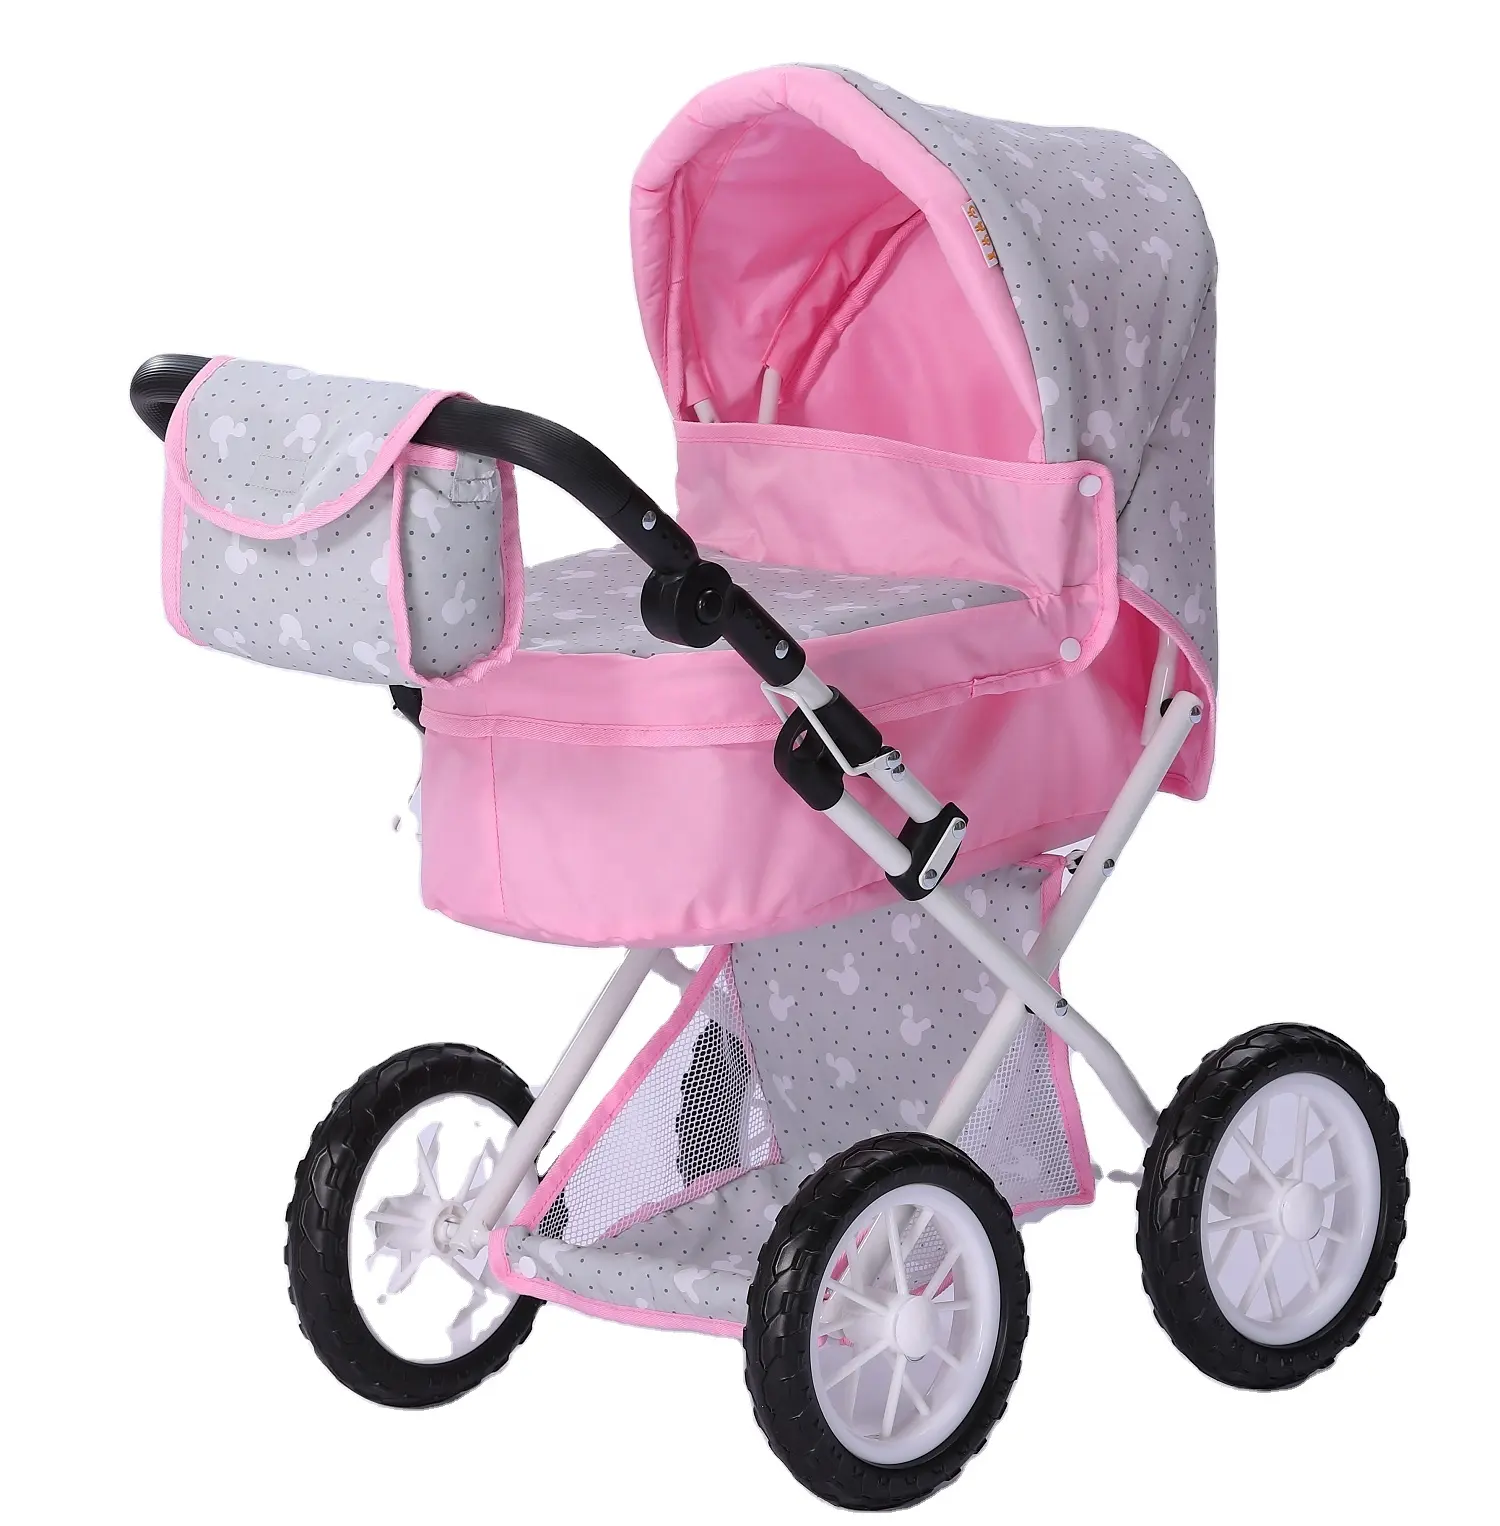 Nuovo stile rimovibile navicella baby doll passeggino carrozzina giocattolo Su Misura regolabile pieghevole ruote